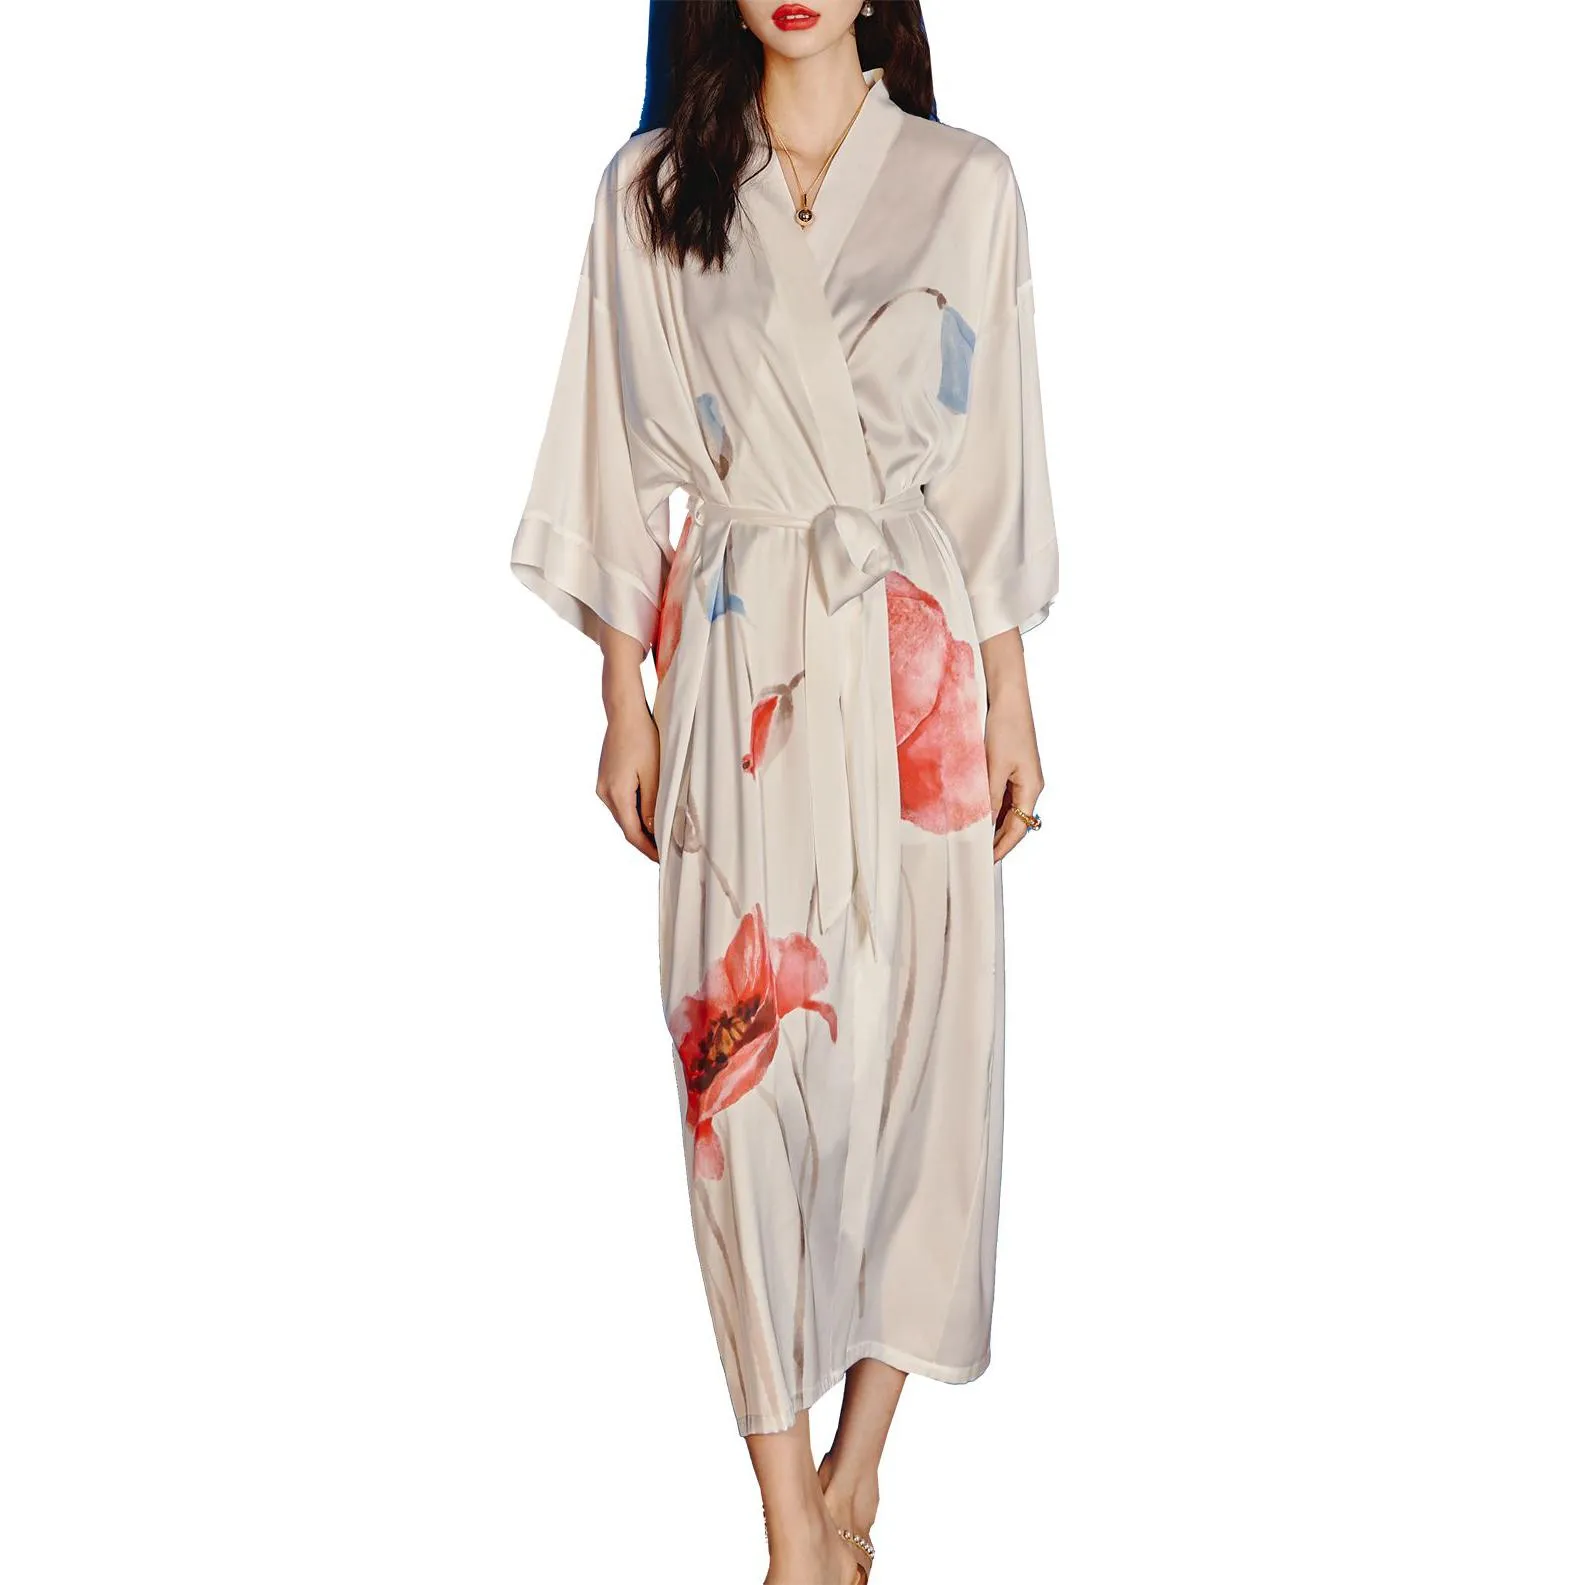 Damska odzież sutowa satyna długa szlafrok kimono elegancka piżama ślubna druhna szata letnia salon nocna odzież nocna DHB4V